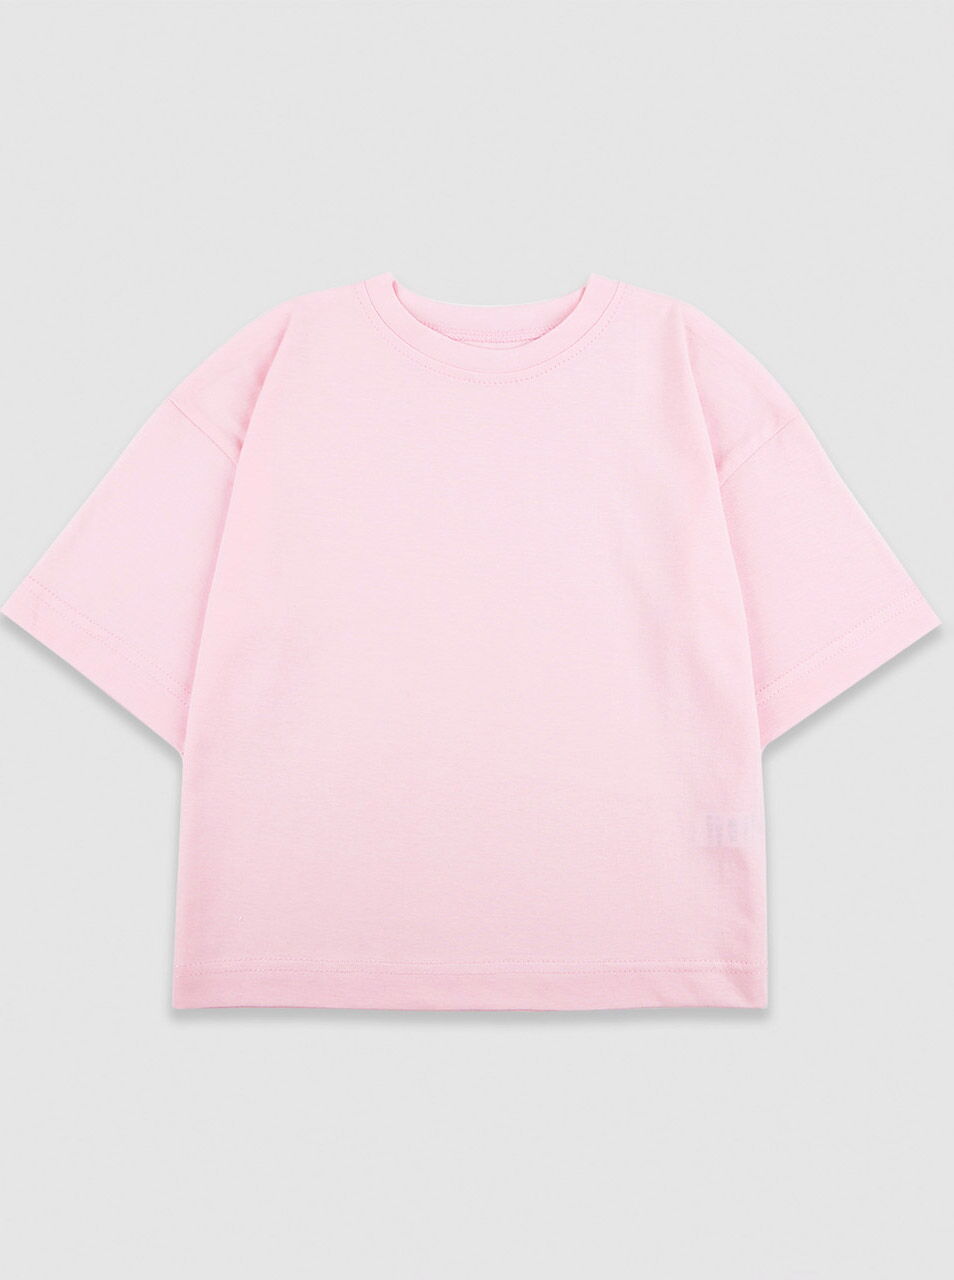 Футболка оверсайз для девочки Фламинго розовая 269-110 - цена